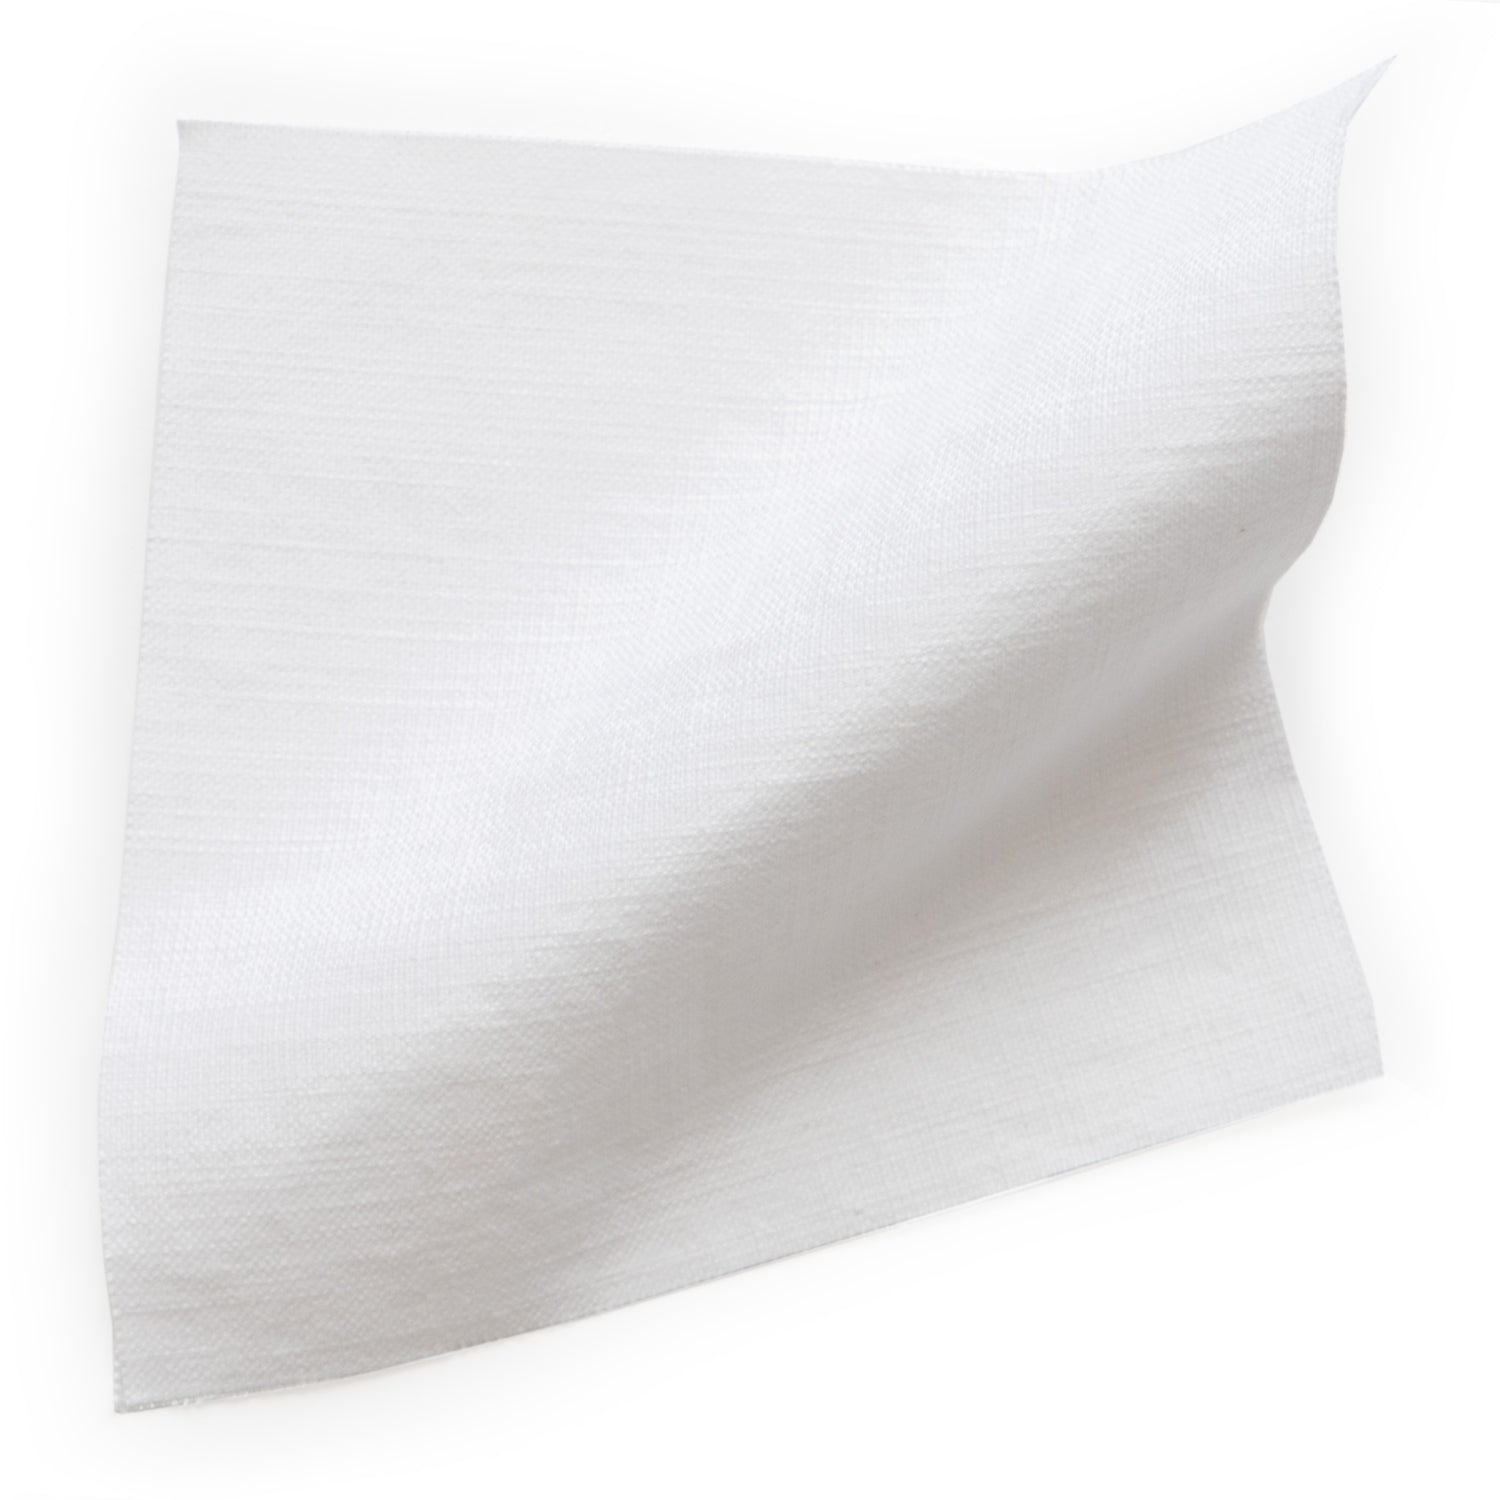 No.10 Cotton Fabric, White, Sheer